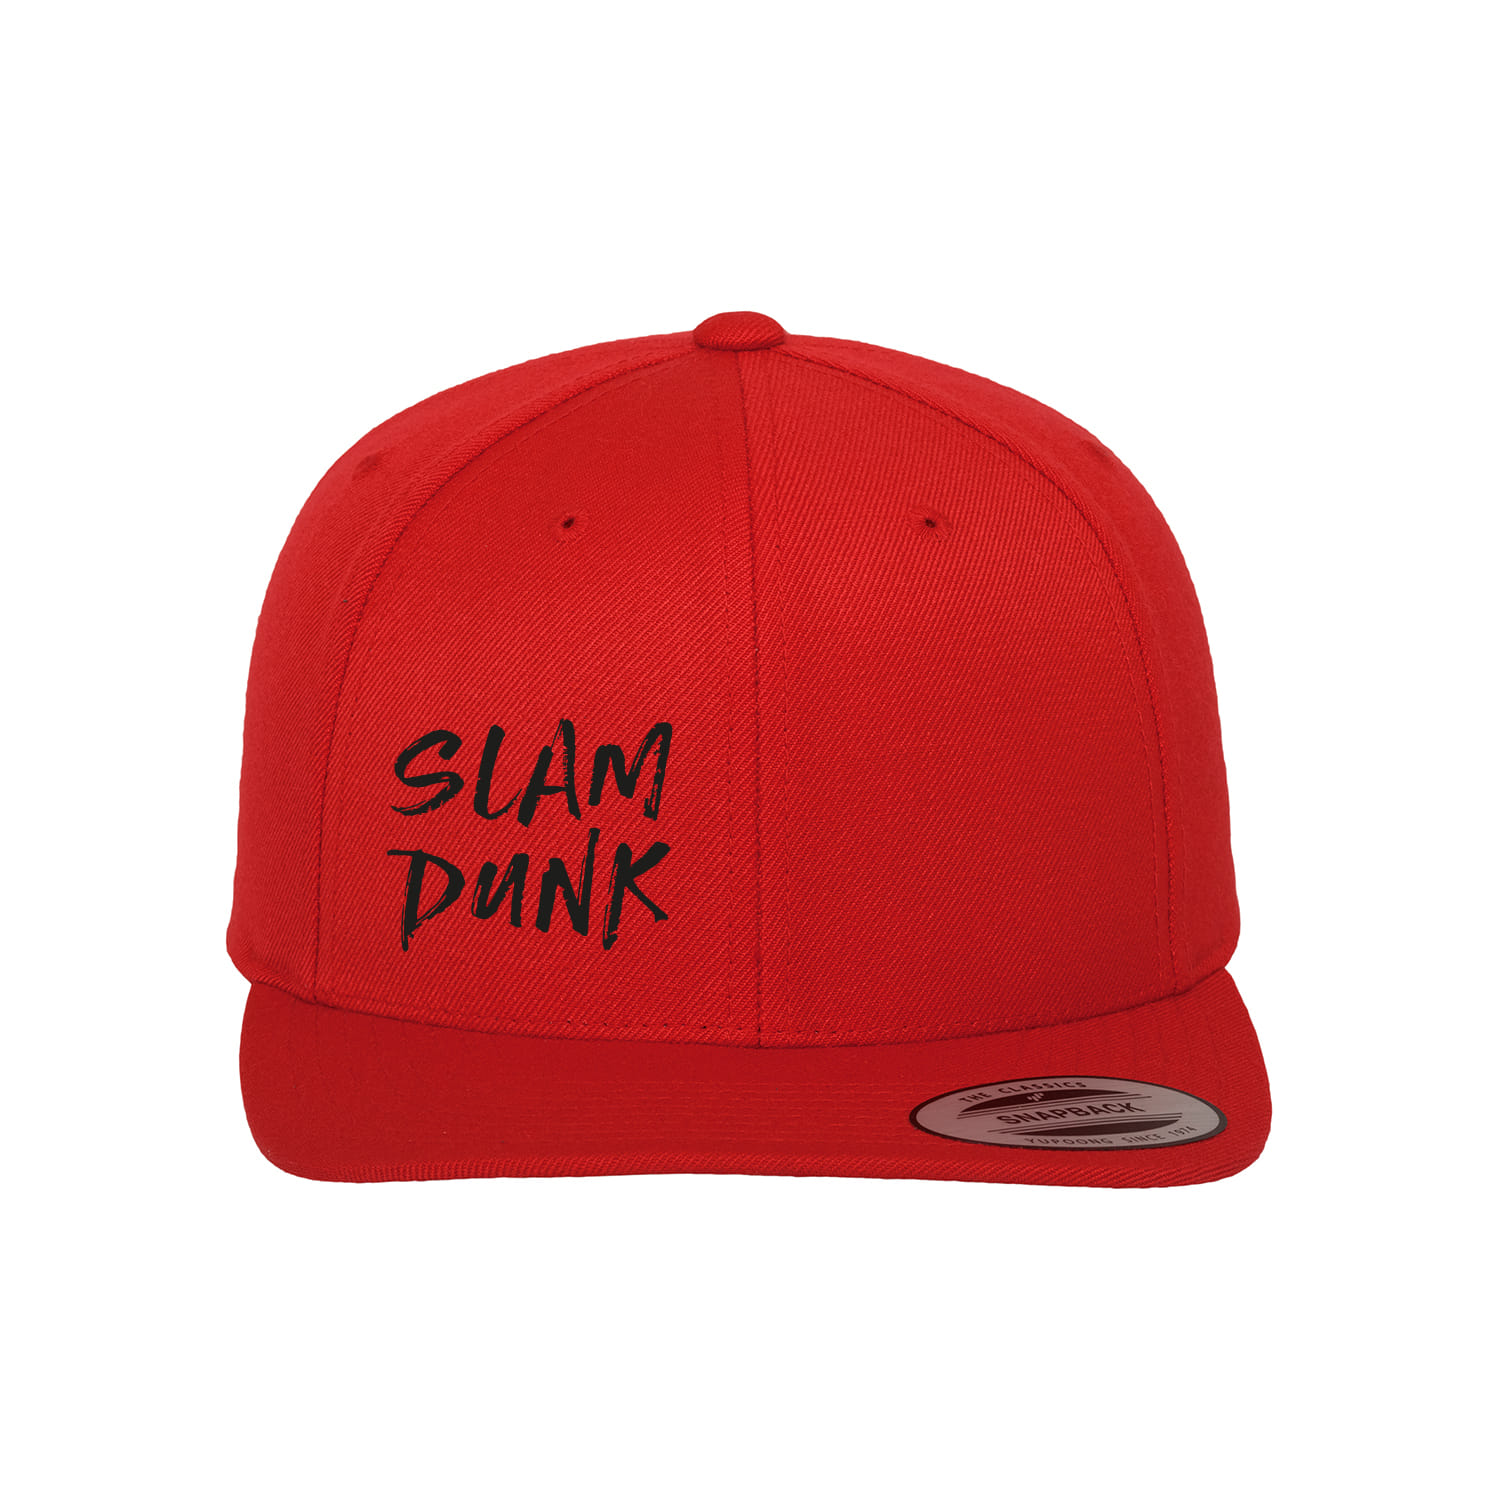 Cap "Slam Dunk"